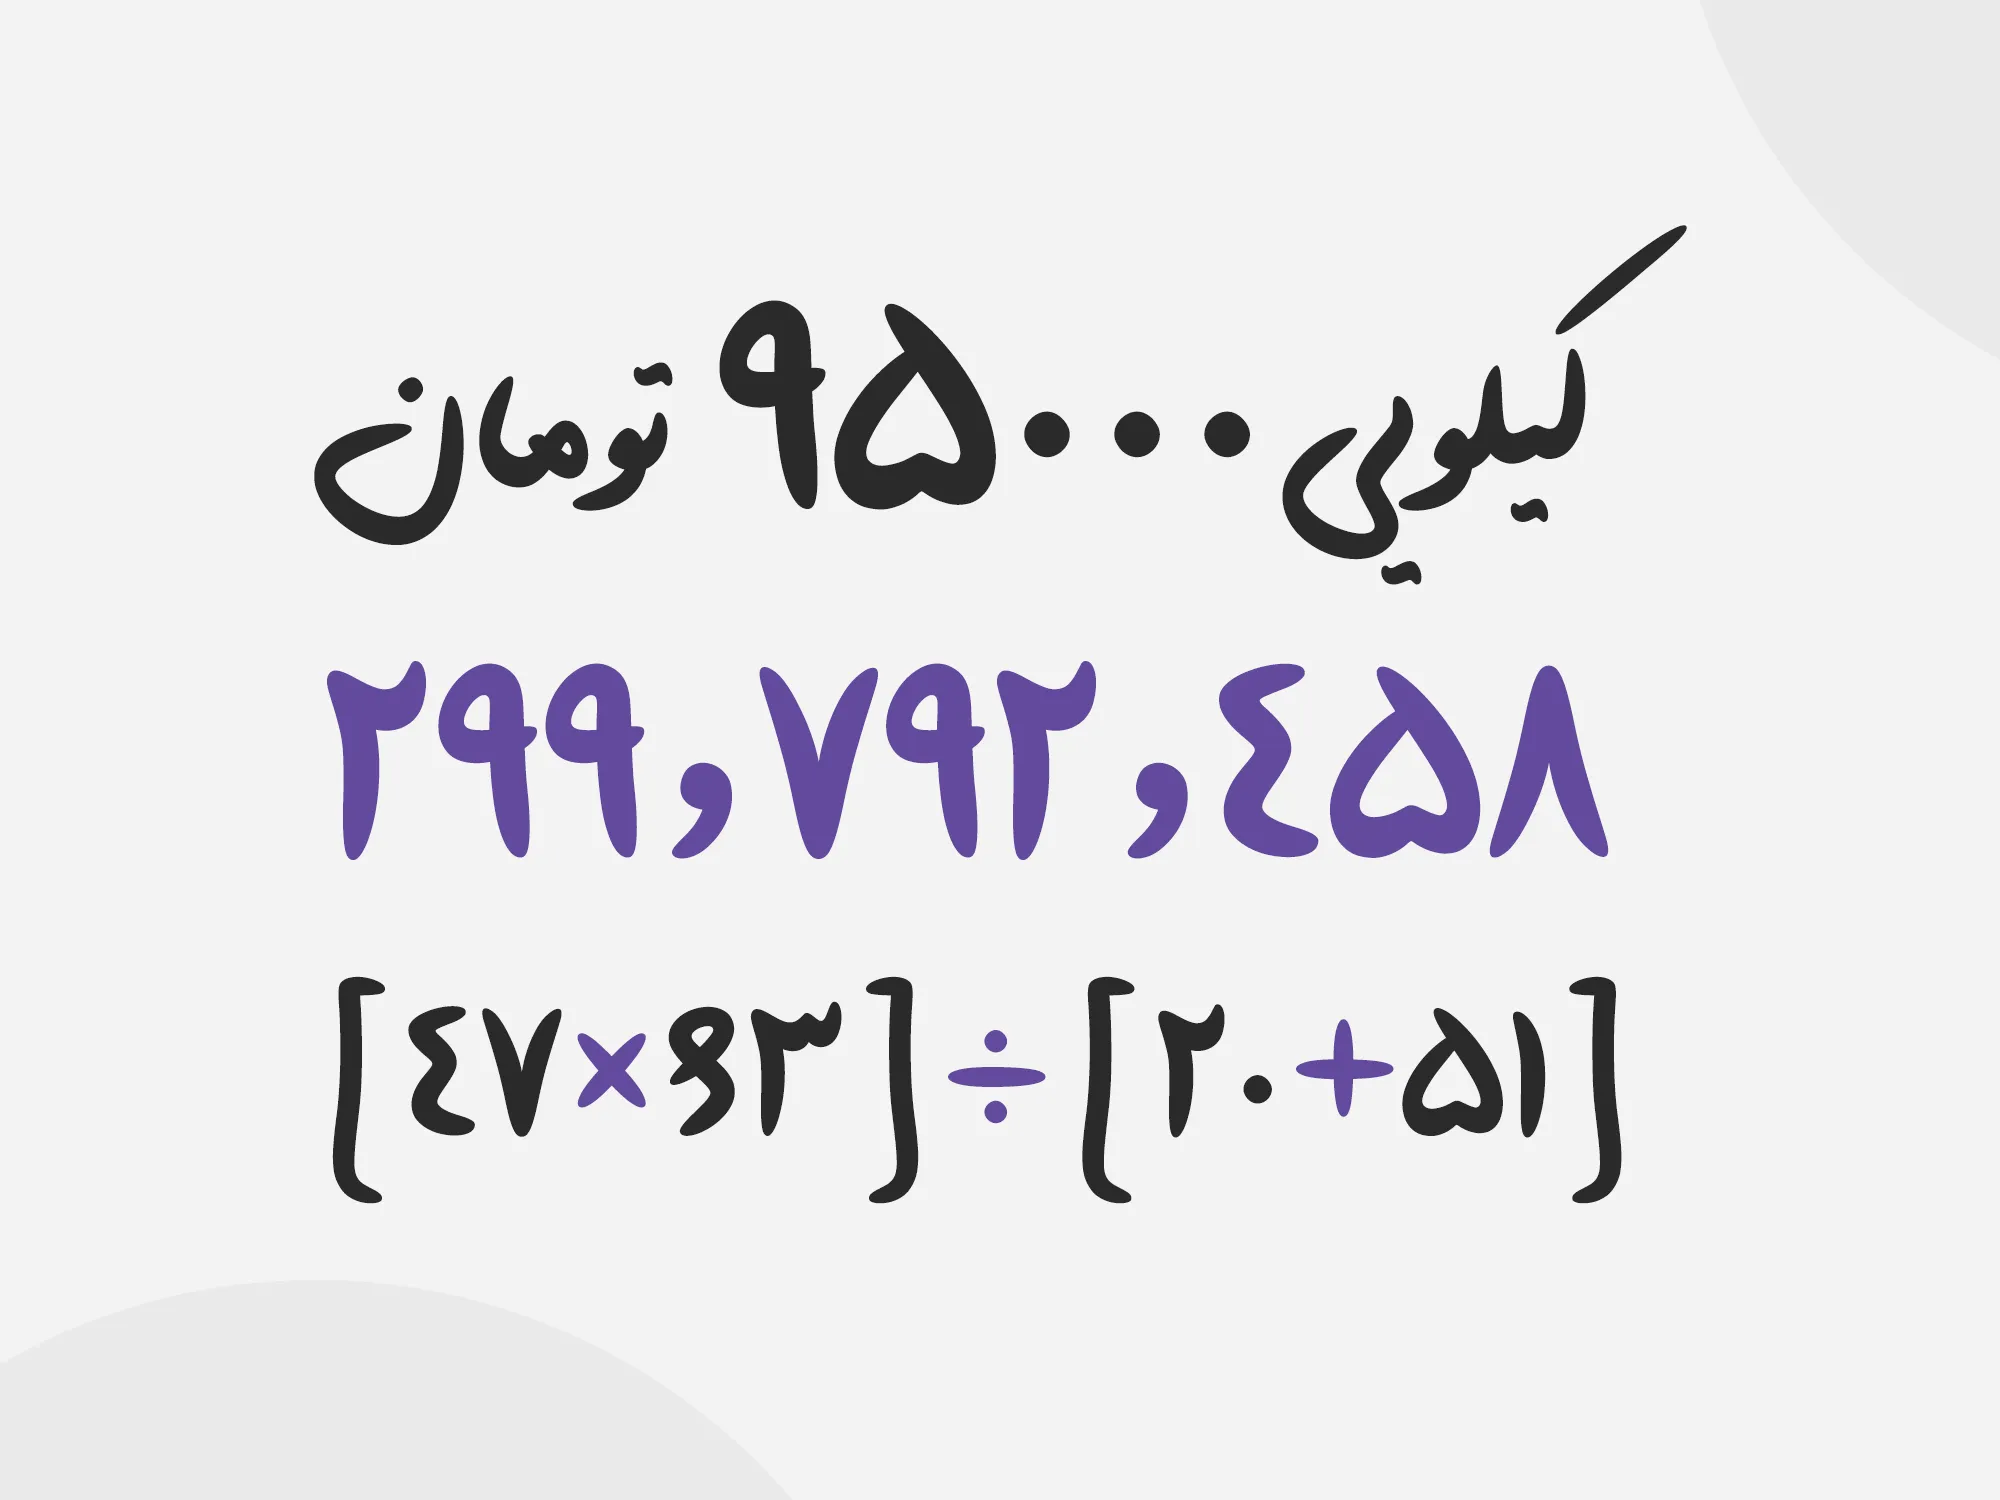 اعداد فارسی و عربی فونت پارسا